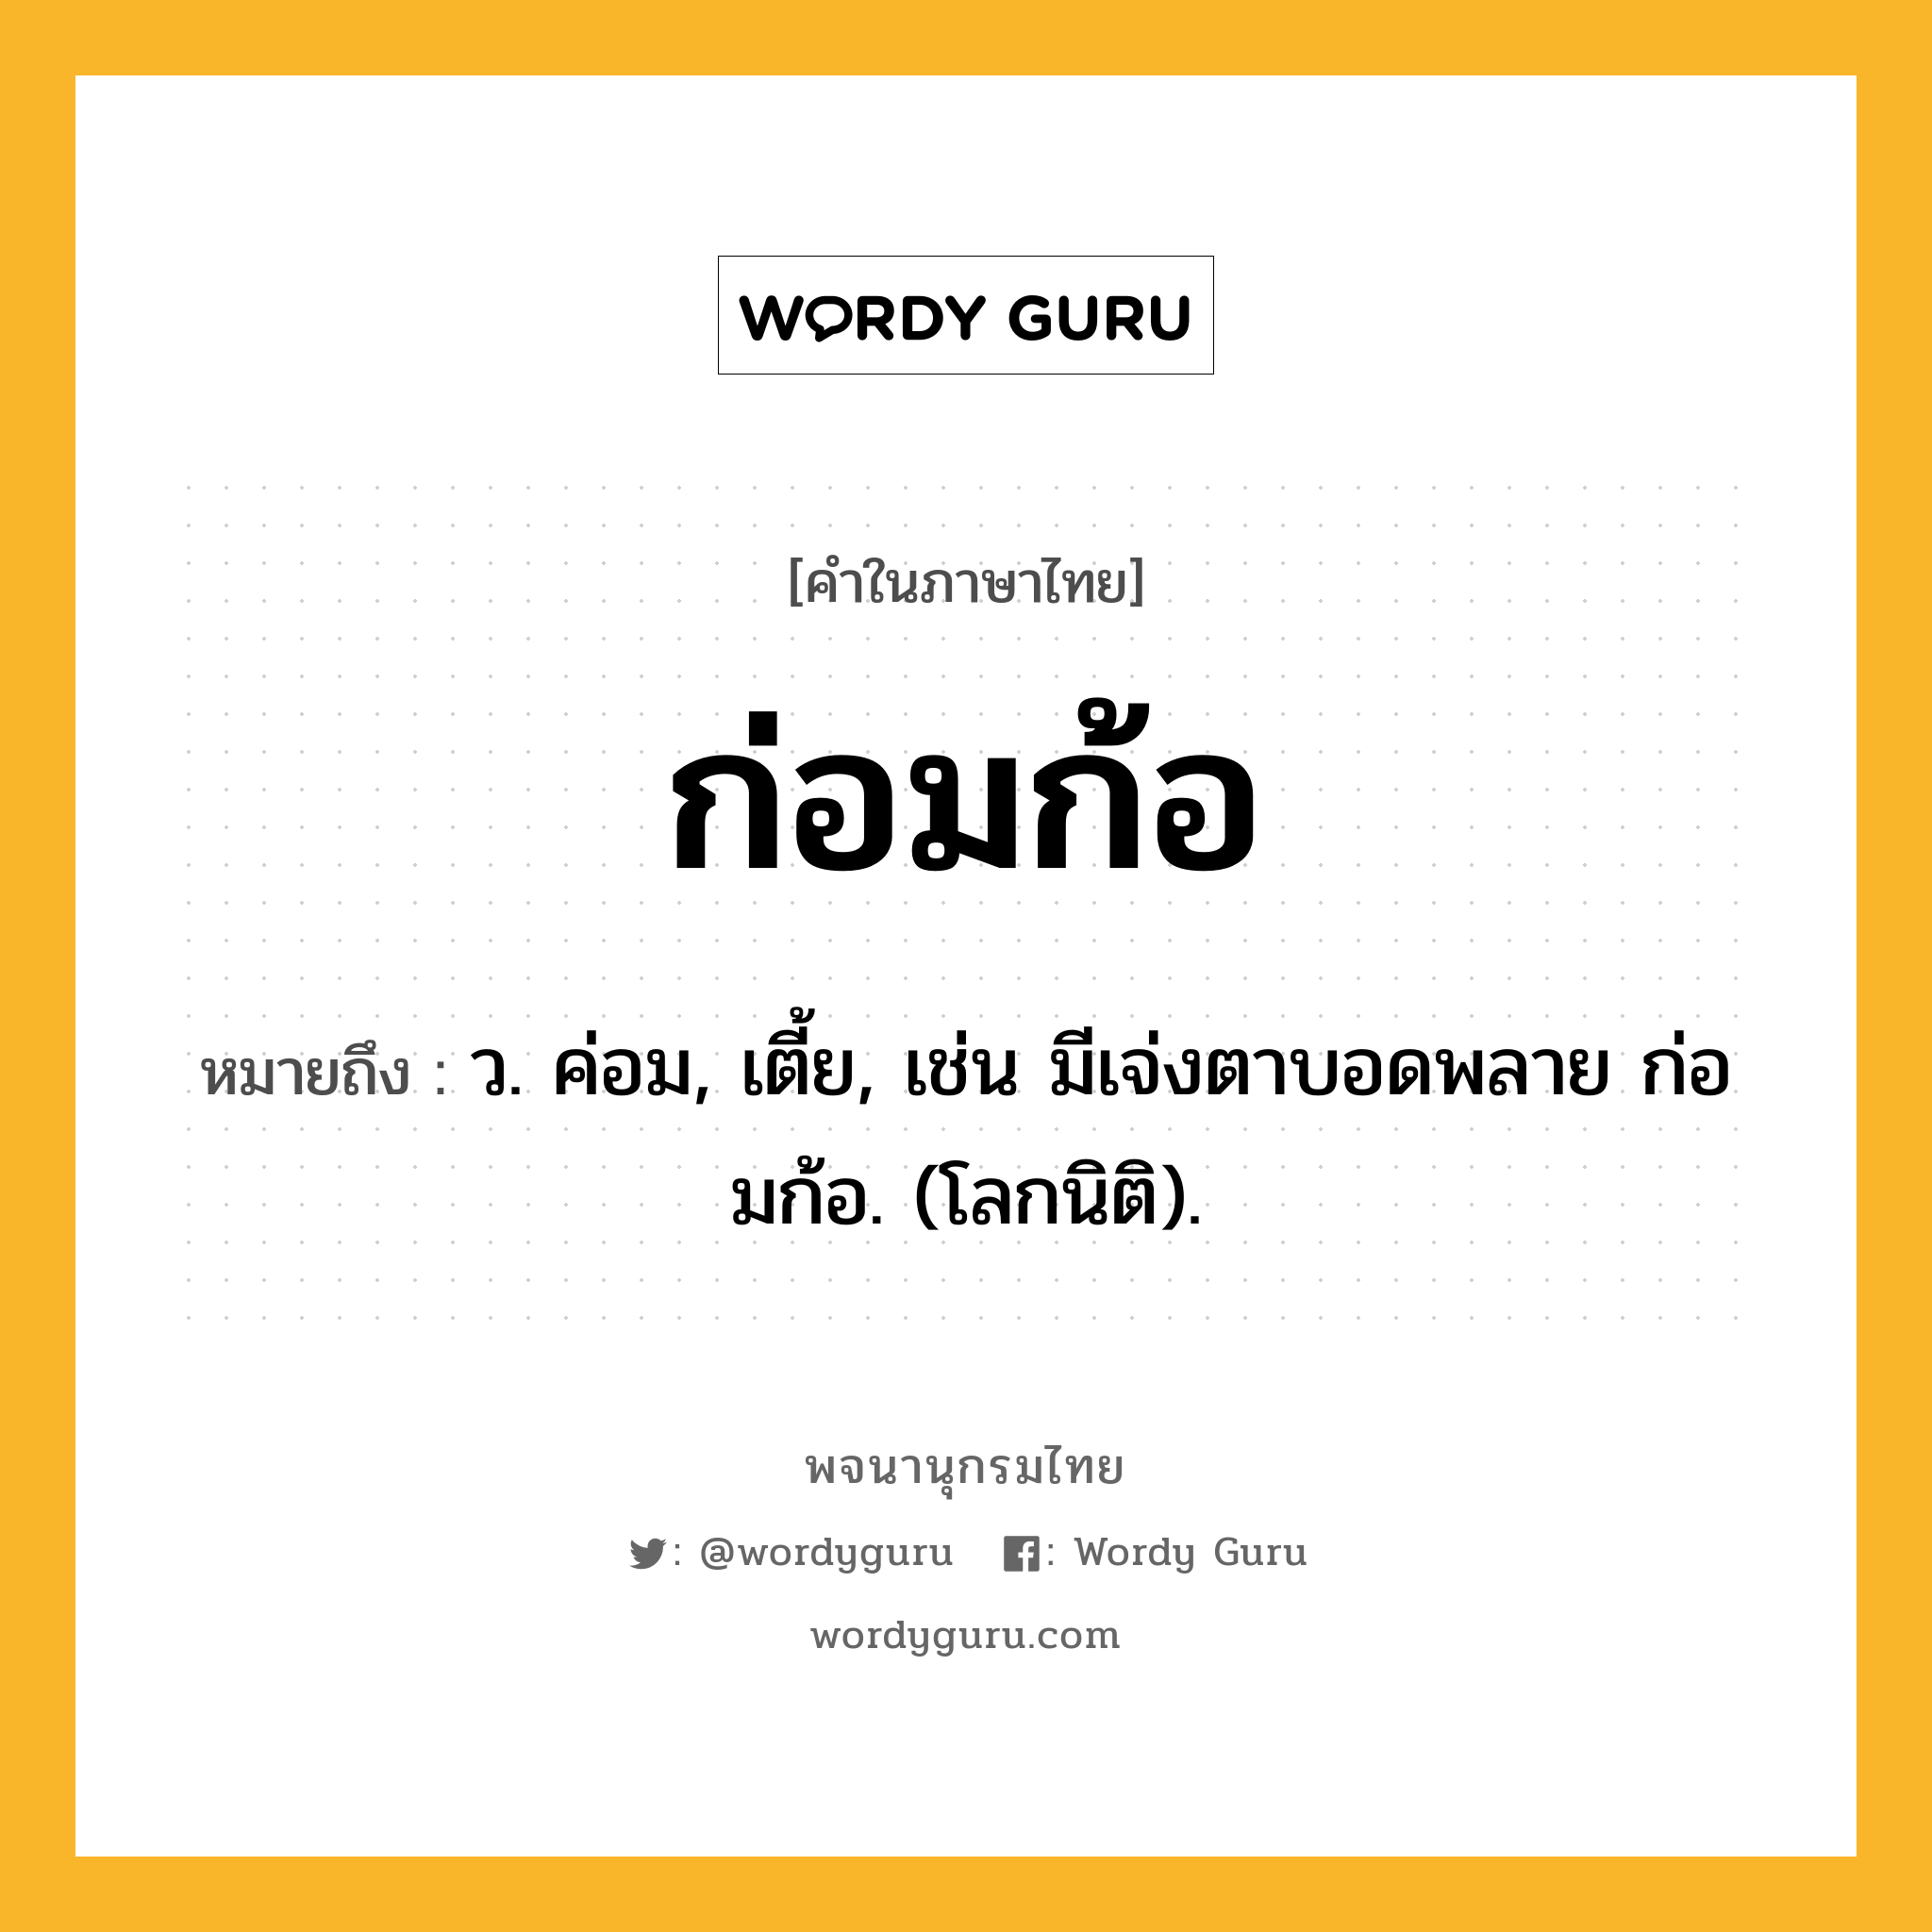 ก่อมก้อ ความหมาย หมายถึงอะไร?, คำในภาษาไทย ก่อมก้อ หมายถึง ว. ค่อม, เตี้ย, เช่น มีเจ่งตาบอดพลาย ก่อมก้อ. (โลกนิติ).